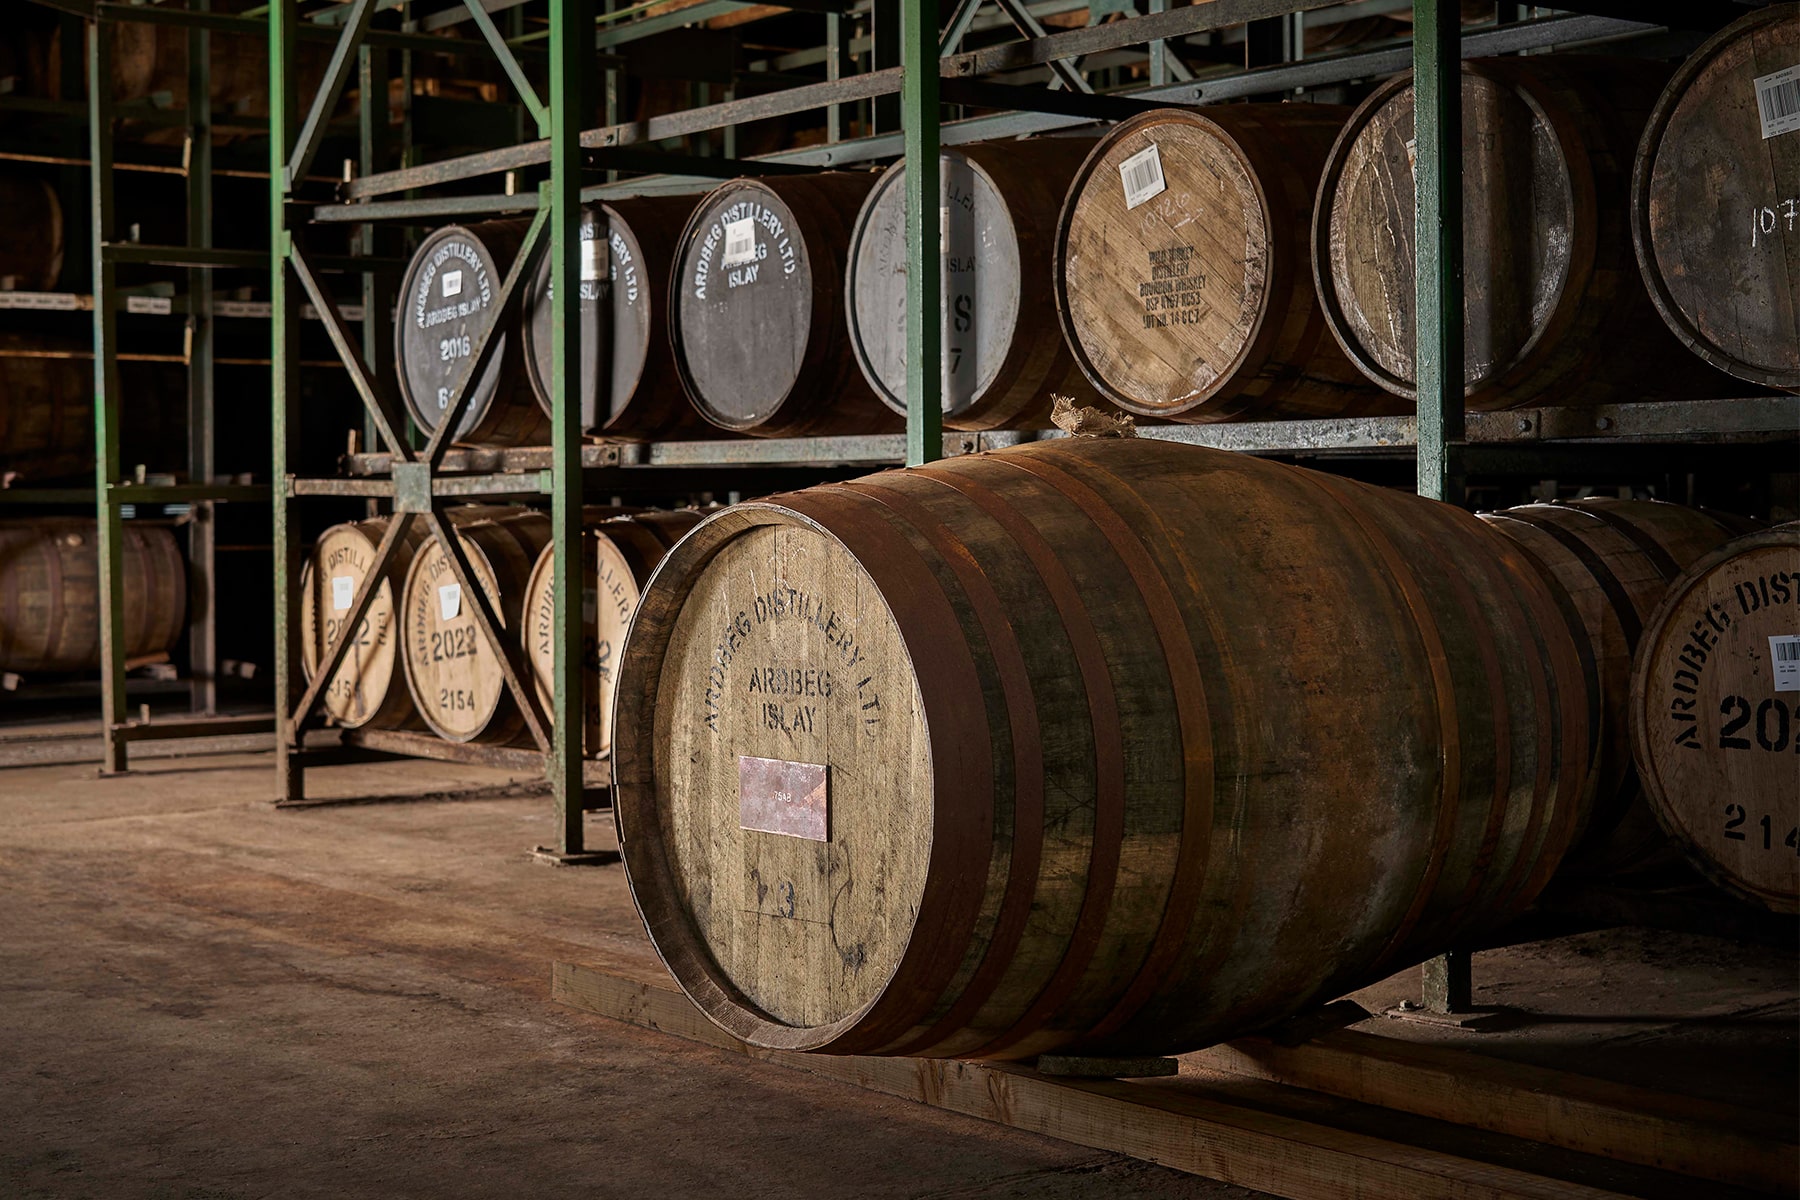 vat Ardbeg Islay Single Malt Scotch Whisky veiling 19 miljoen euro